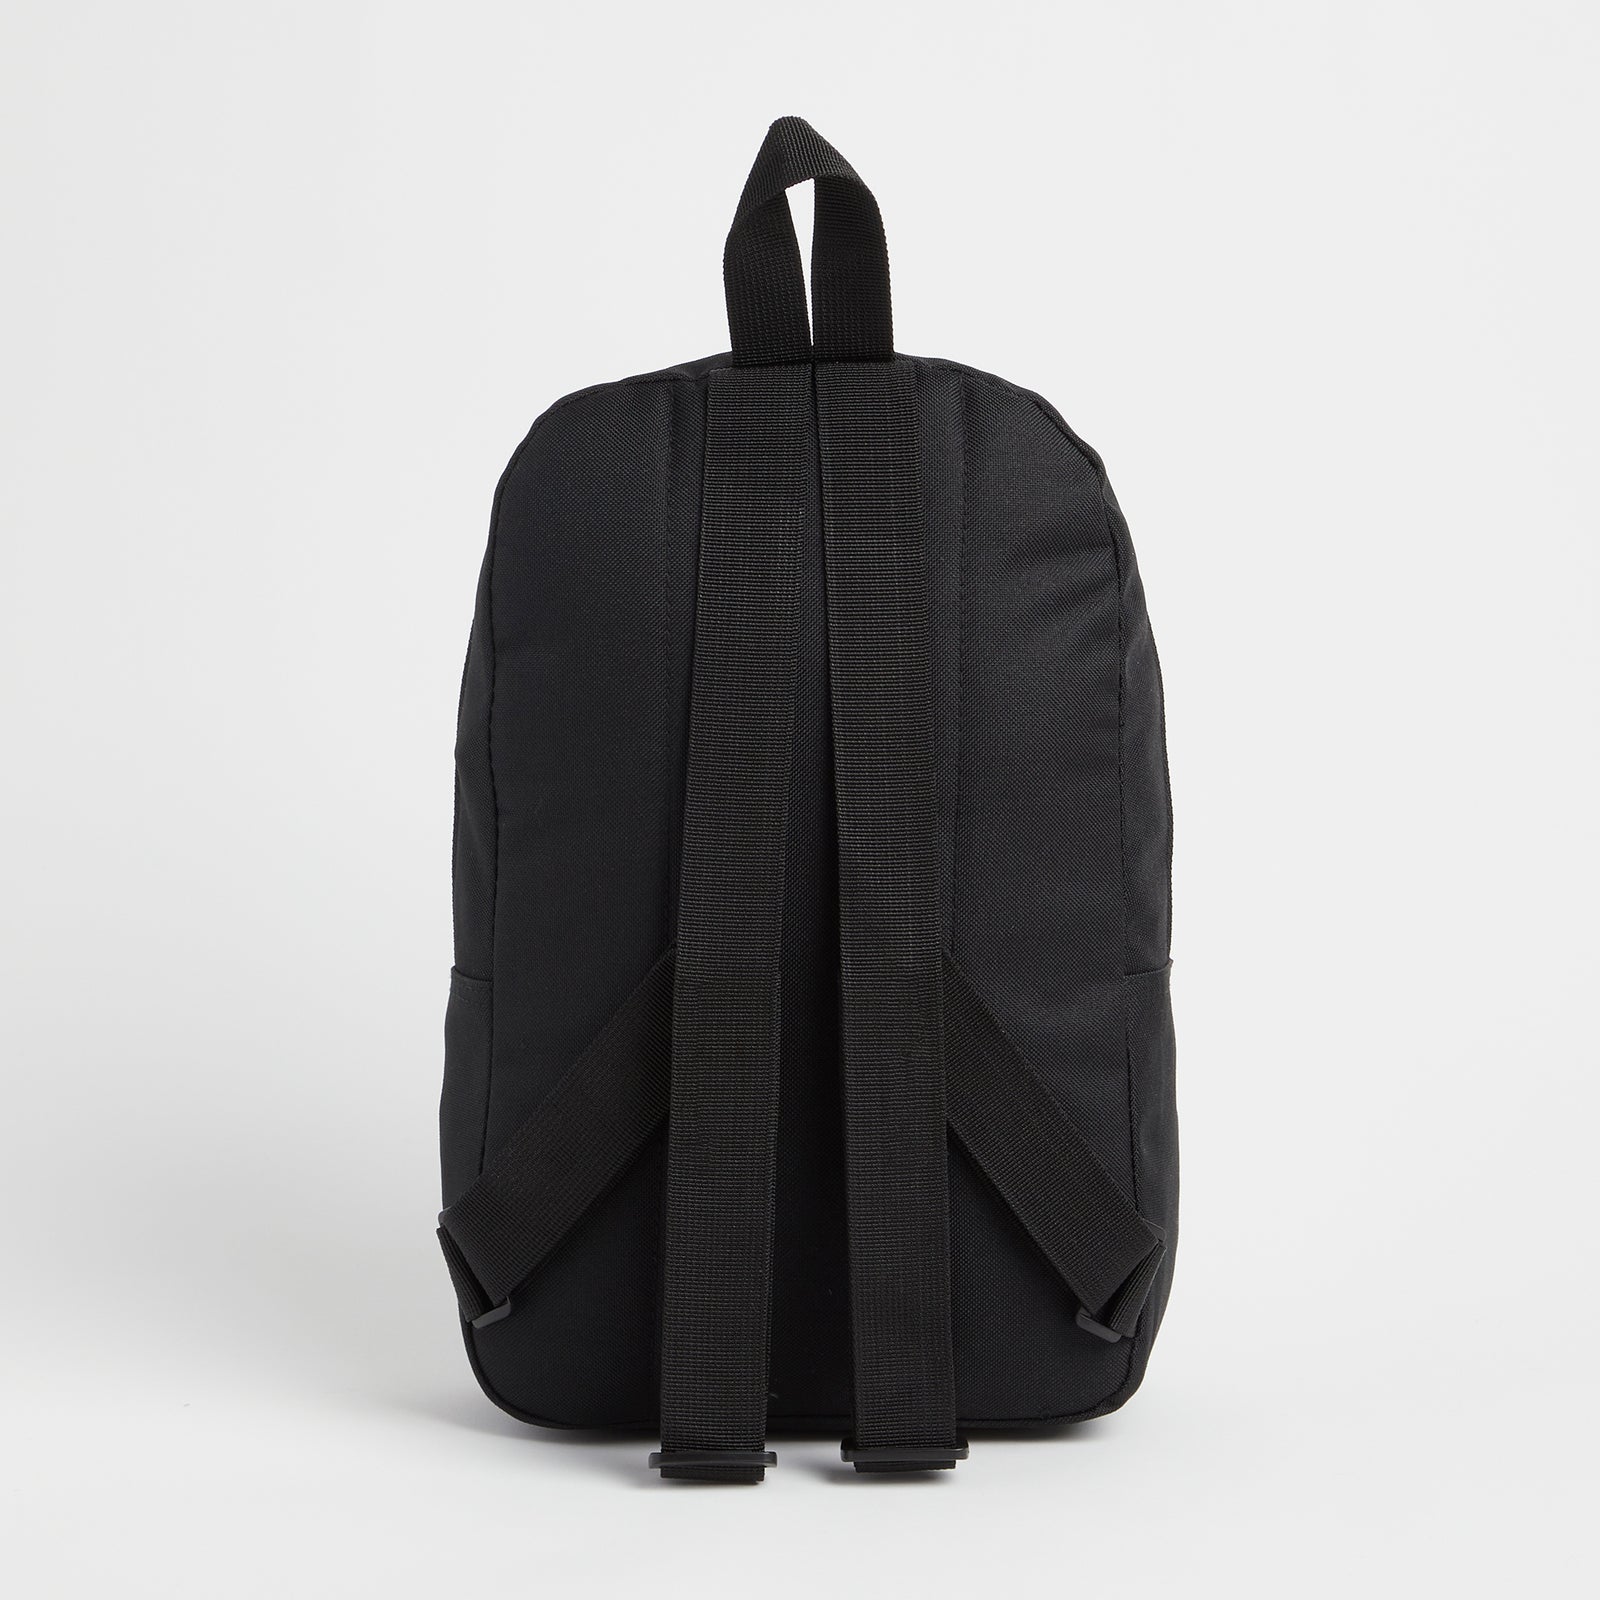 Alphabet Black Backpack